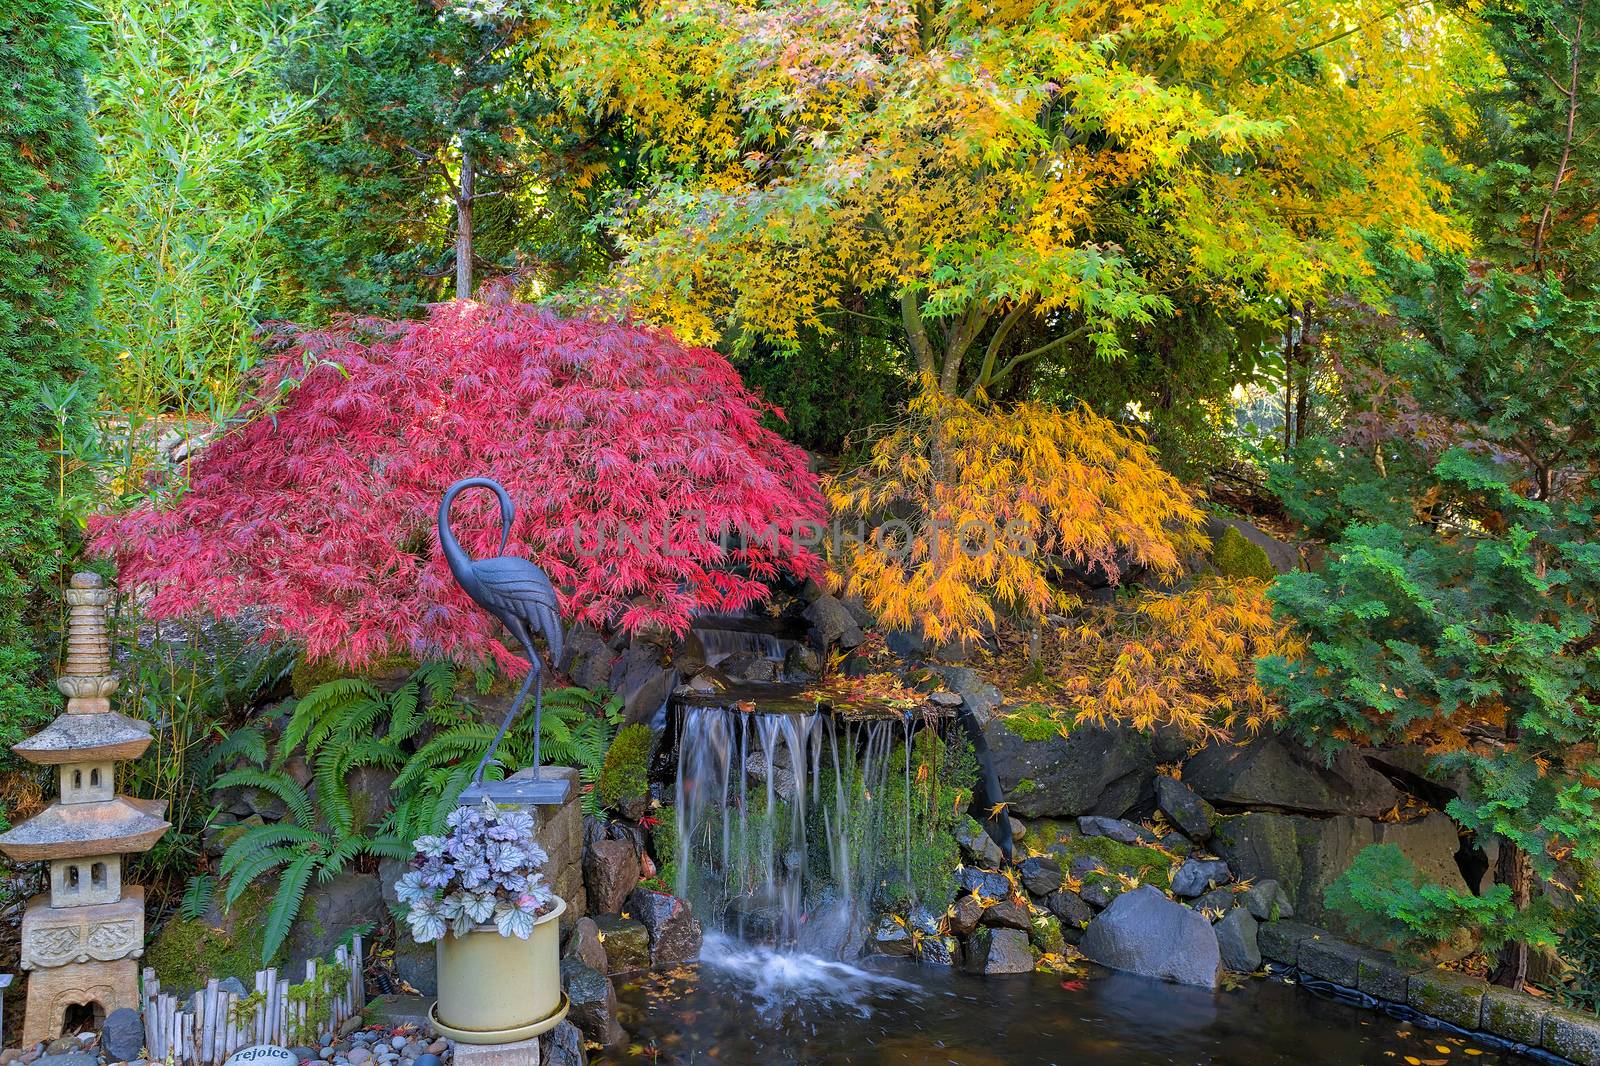 House Garden Backyard Waterfall Pond in Fall Season by jpldesigns